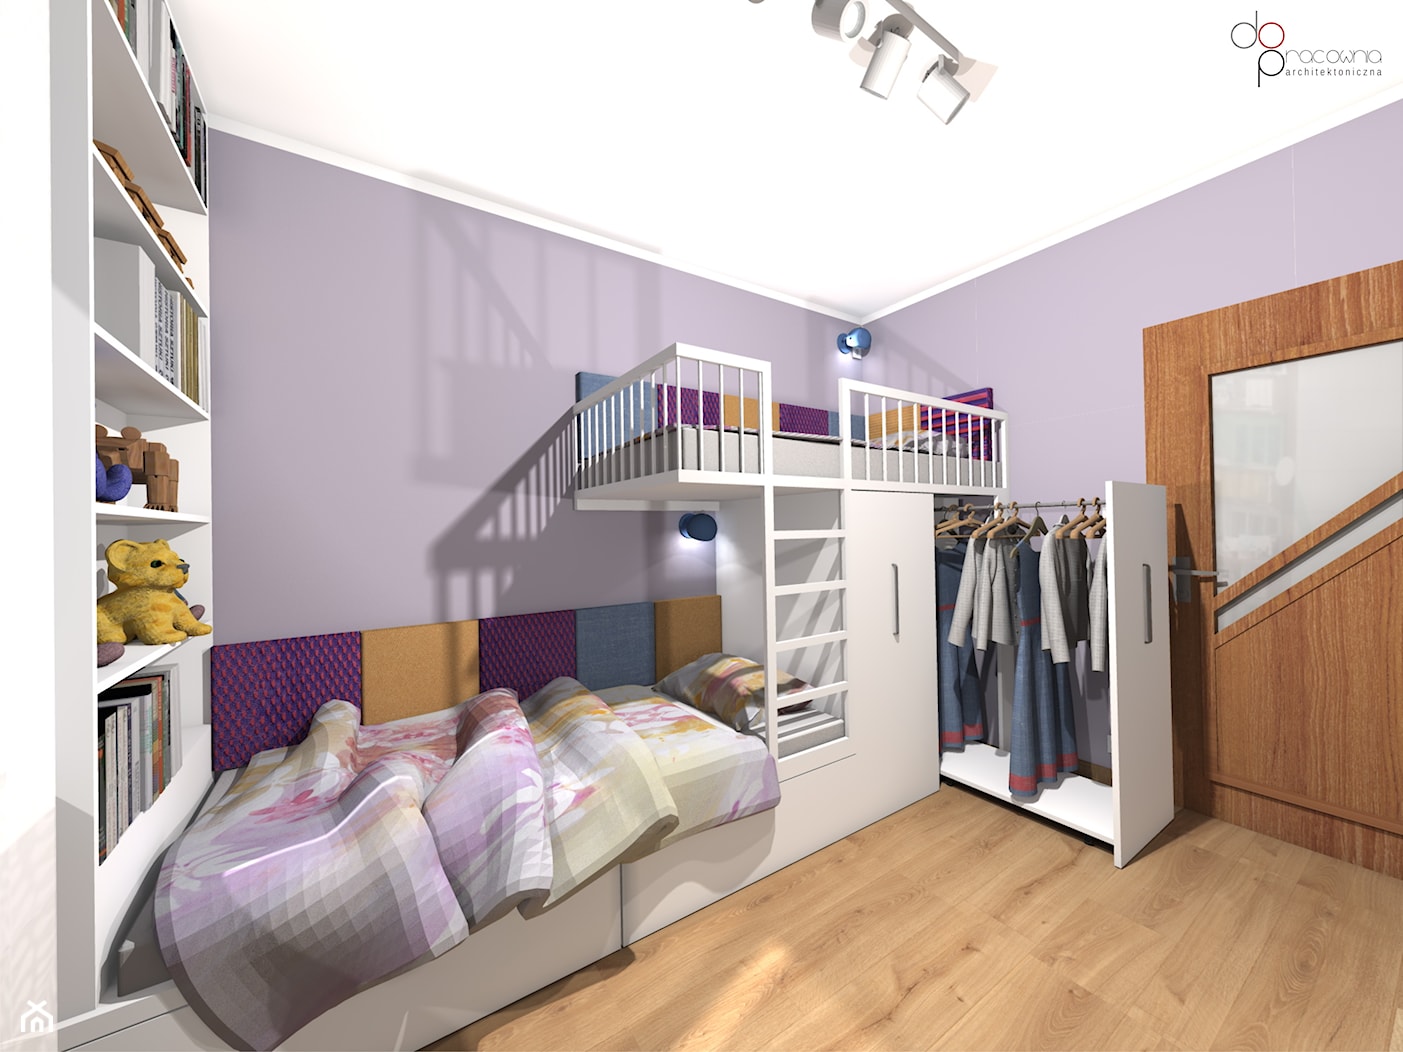 łóżko piętrowe z garderobą w pokoju dzieci - zdjęcie od dopracownia architektoniczna - Homebook